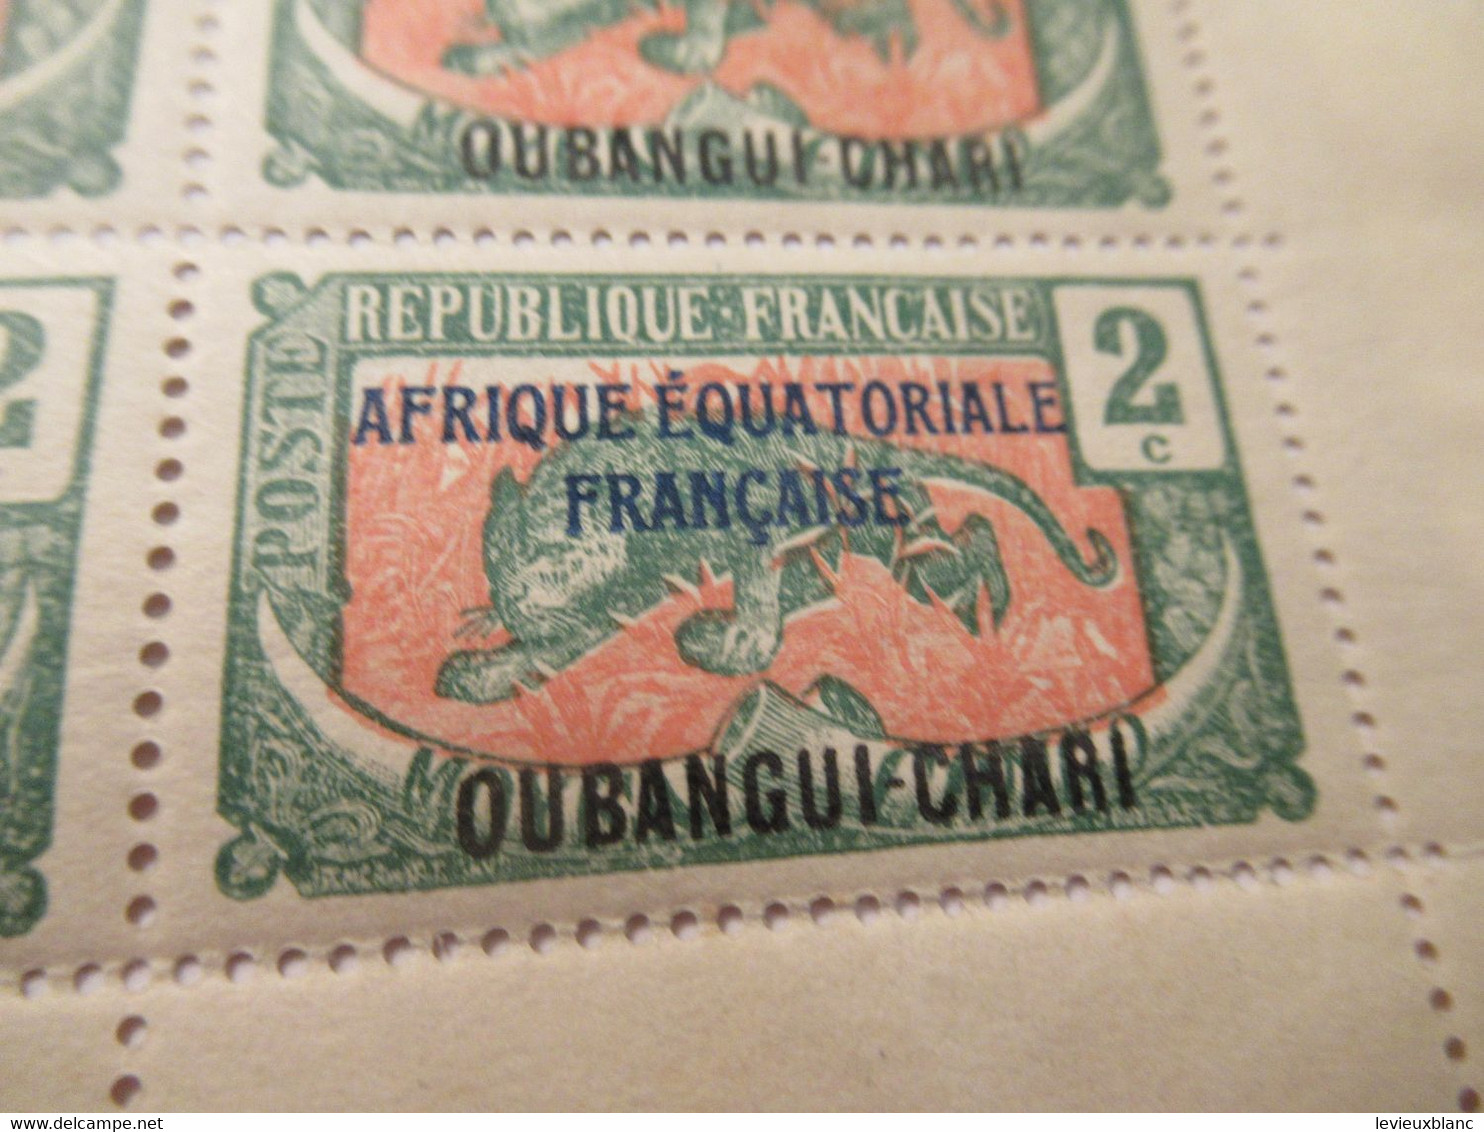 Plaque Complète De 25 Timbres 2C Anciens/Moyen Congo 1907 Surchargés AEF/Oubangui Chari1/Panthère/1924-25     TIMB155 - Otros - África